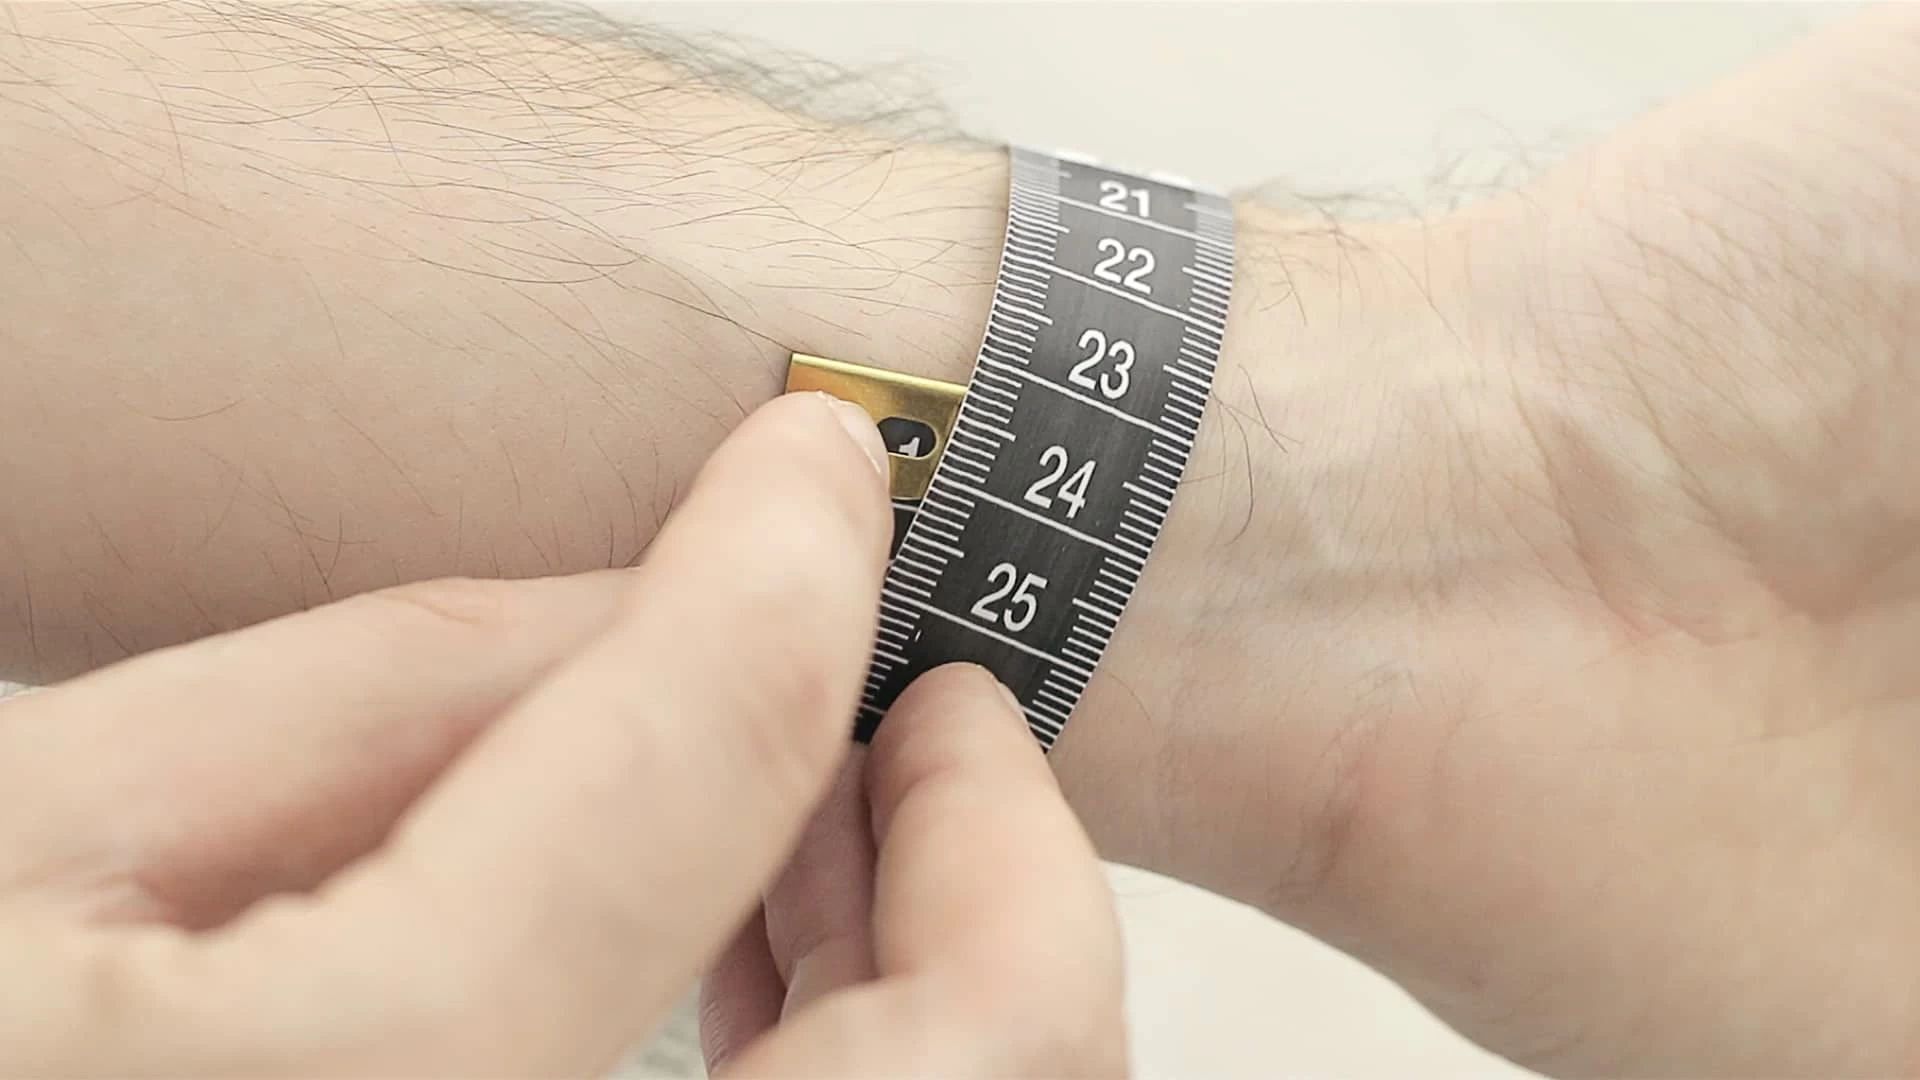 Cách chọn size đồng hồ phù hợp cho nam và nữ chuẩn không cần chỉnh - Ảnh 2